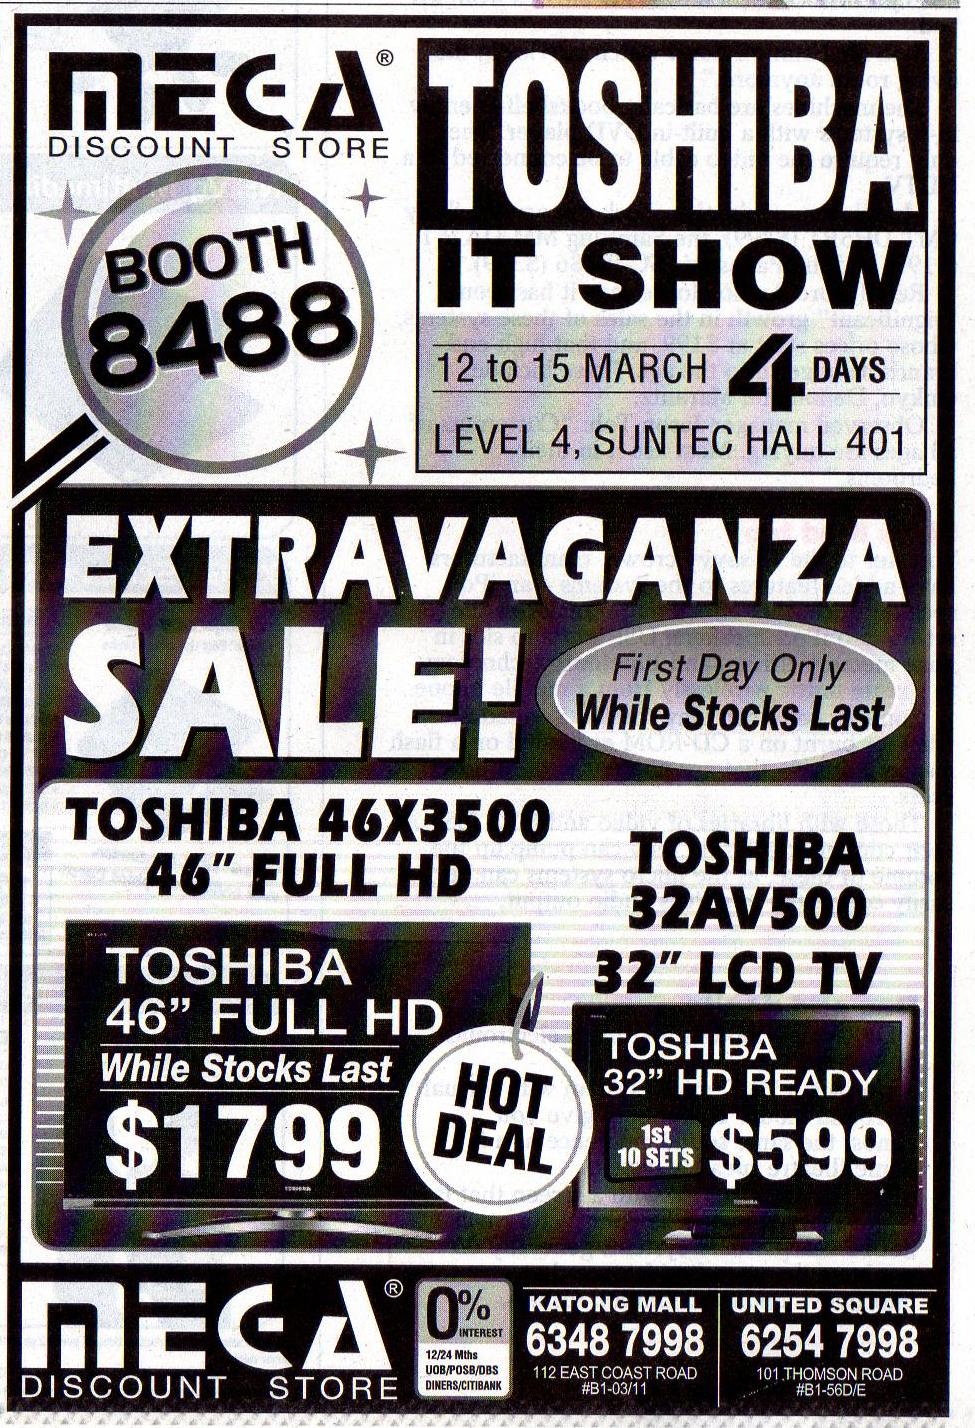 IT Show 2009 price list image brochure of Mega Discount Store Dl (coldfreeze)